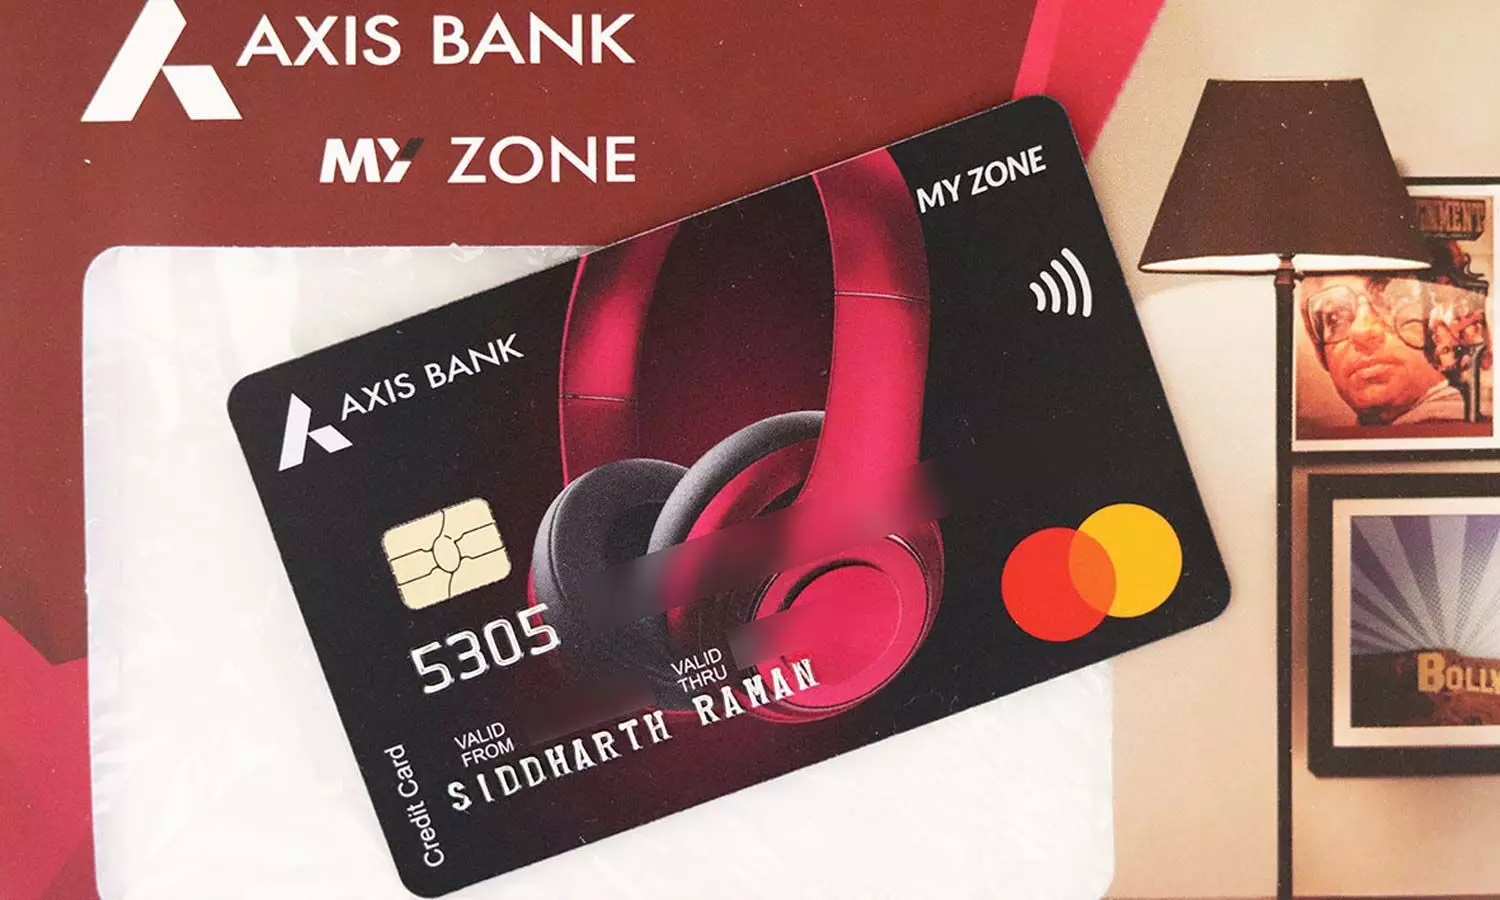 My Zone Axis Bank Credit Card | షాపింగ్ టు ట్రావెలింగ్‌.. బెస్ట్ క్రెడిట్ కార్డు ఇదే.. ఇవీ డిటైల్స్‌